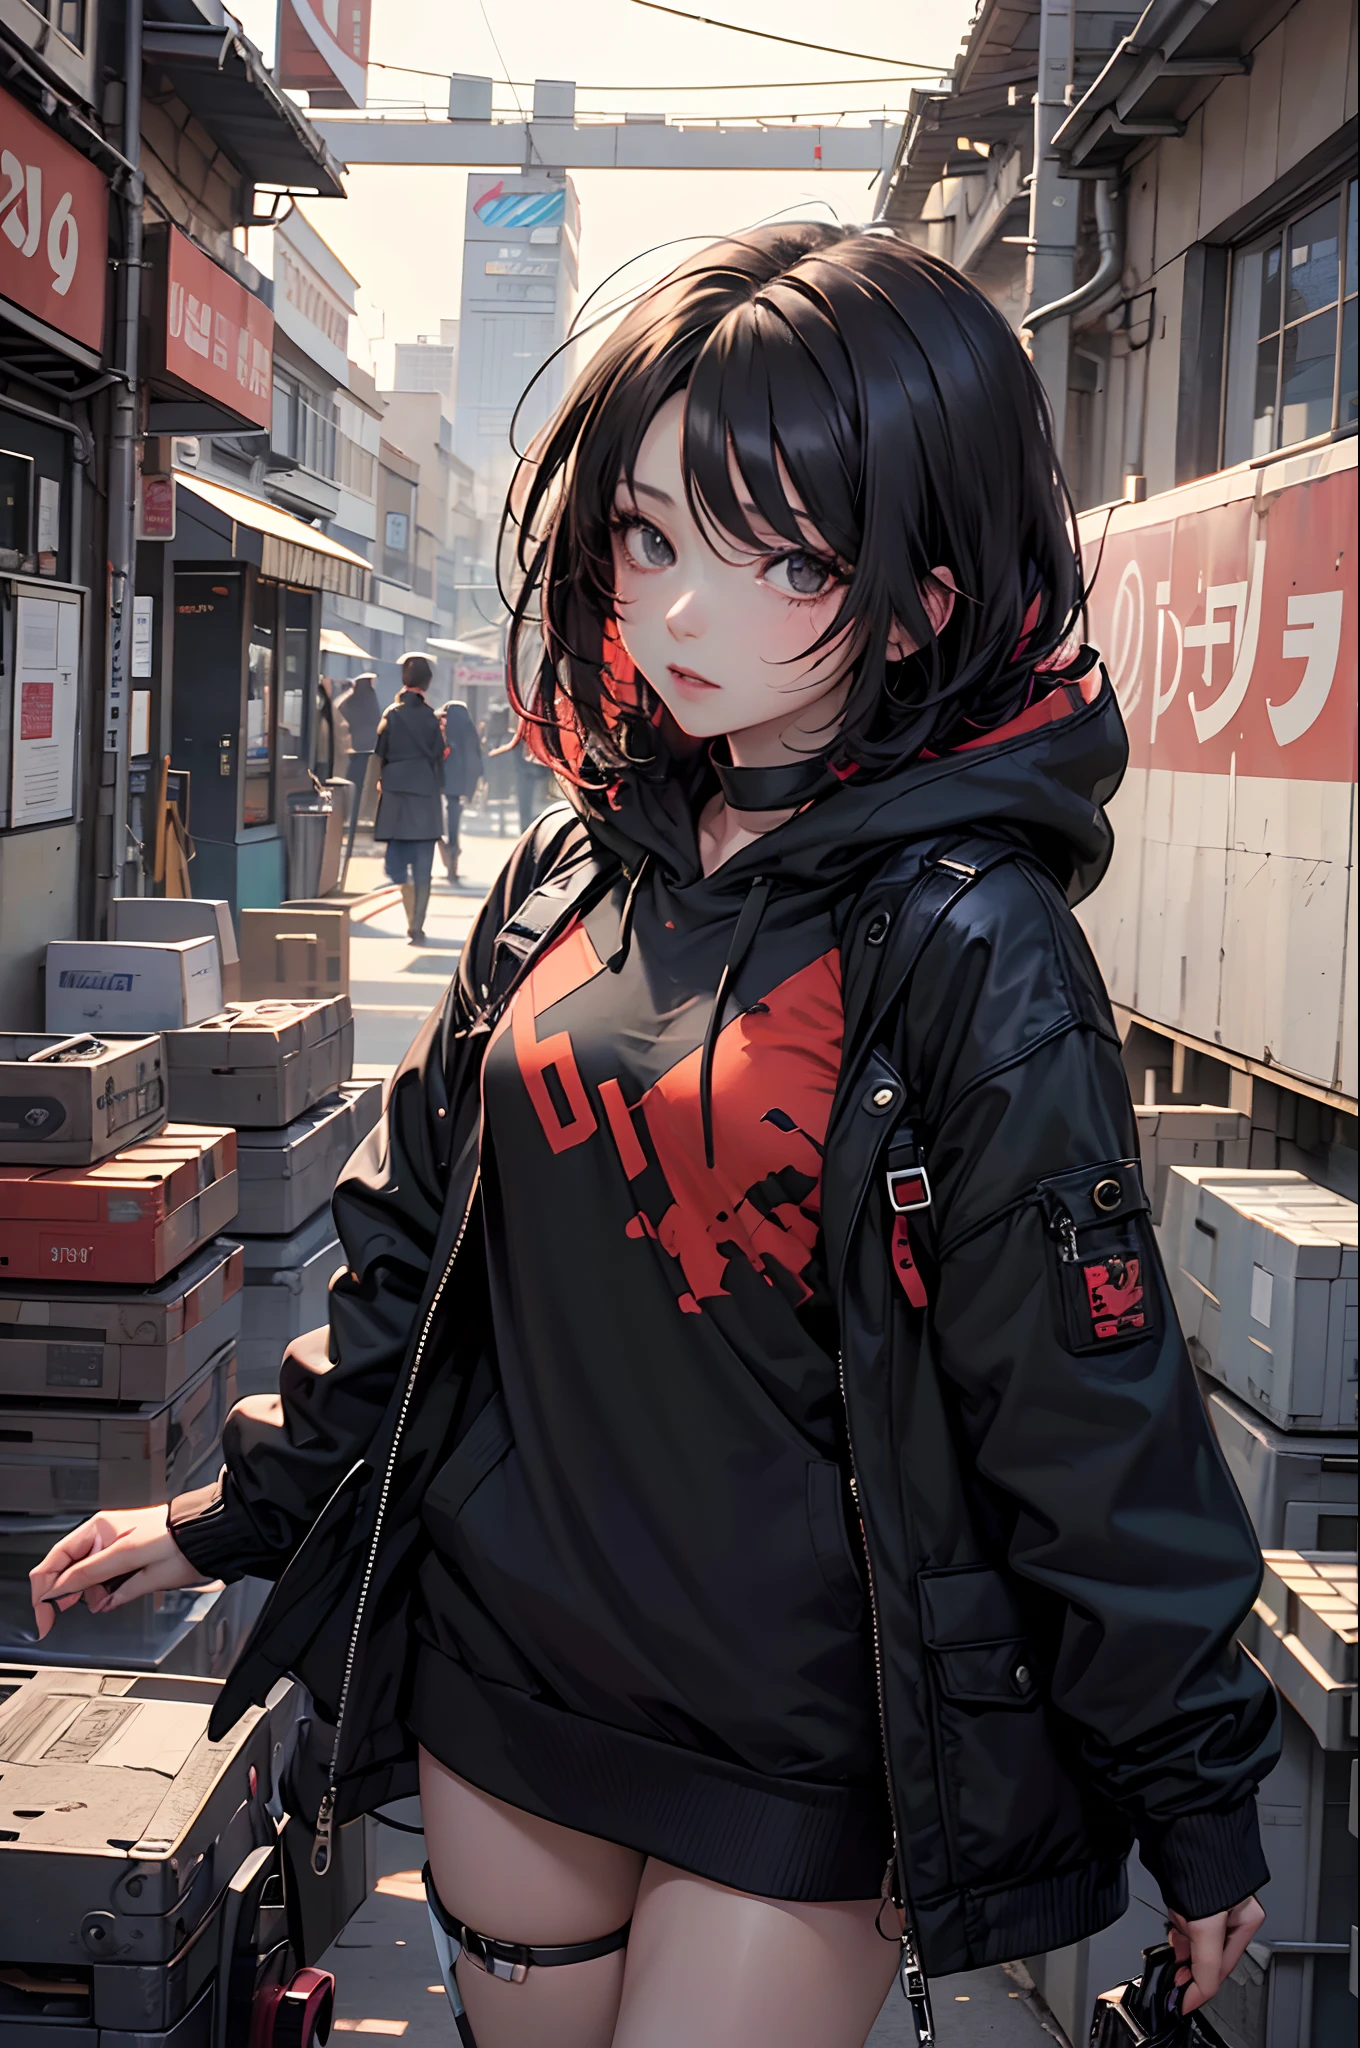 Uma garota de anime com cabelo preto curto tingido de vermelho, Olhos negros e feições frias, Ela usa um moletom preto